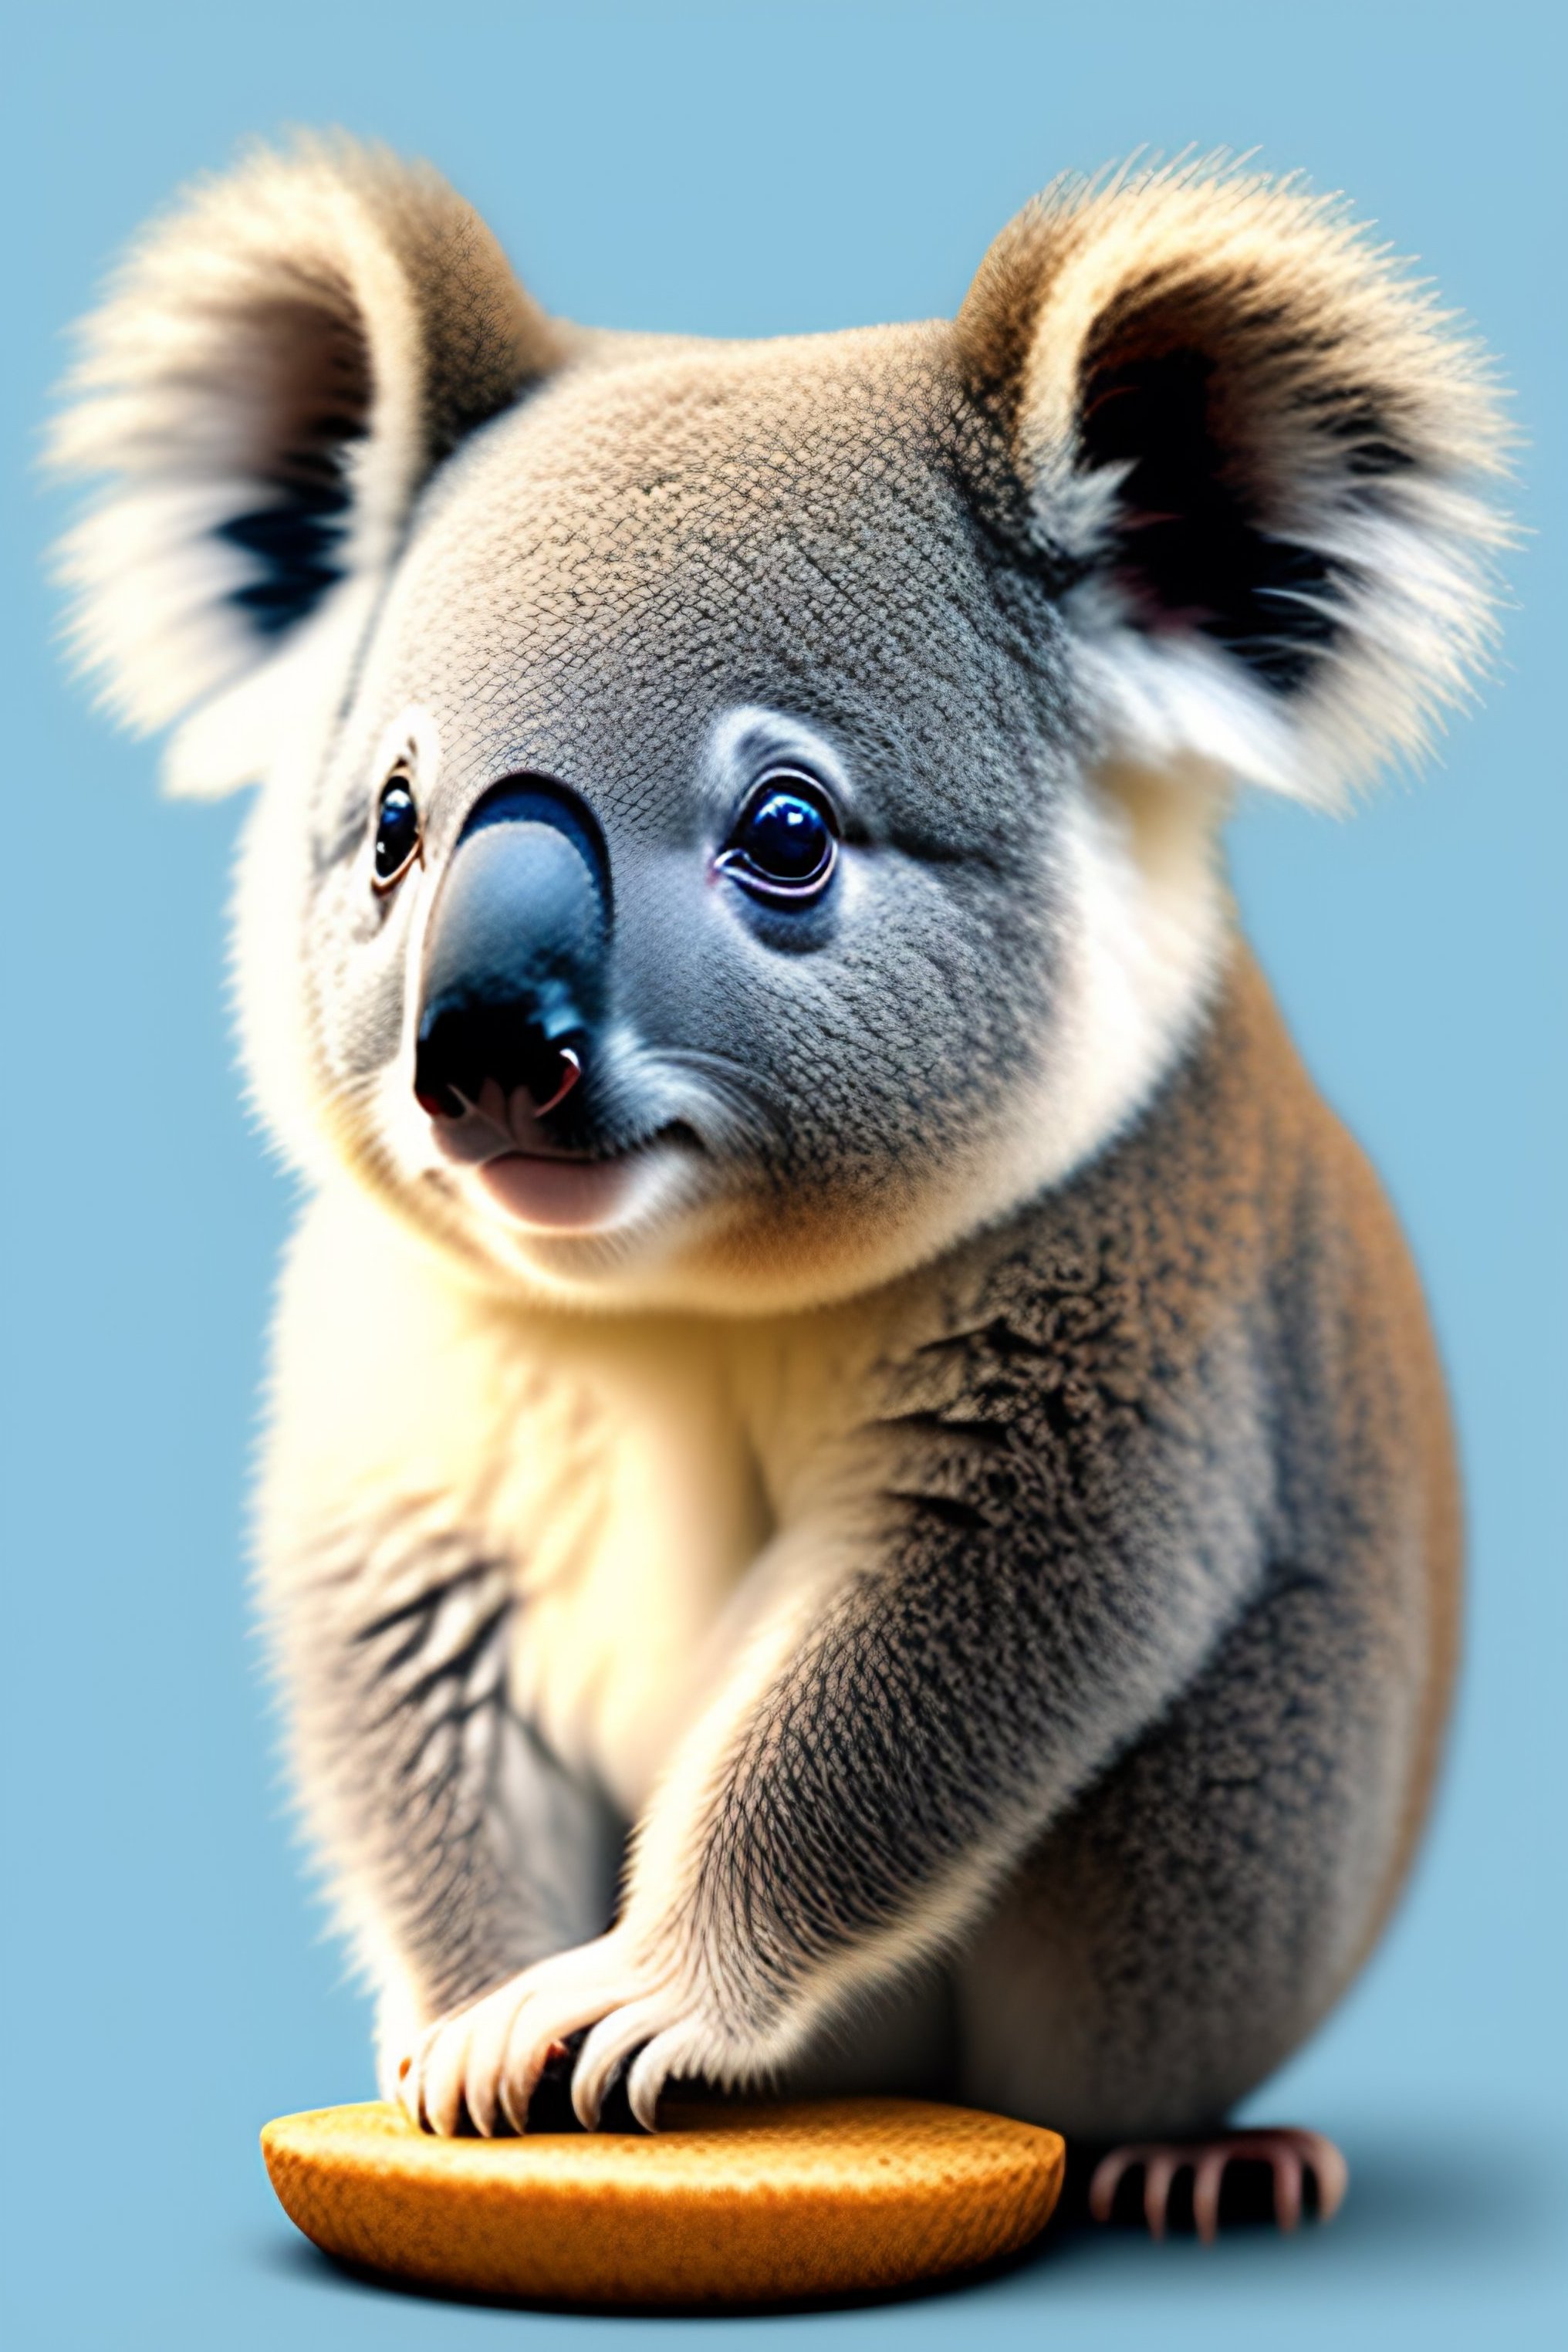 To celebrate Wild Koala Day 2023 I was lucky to spot this girl